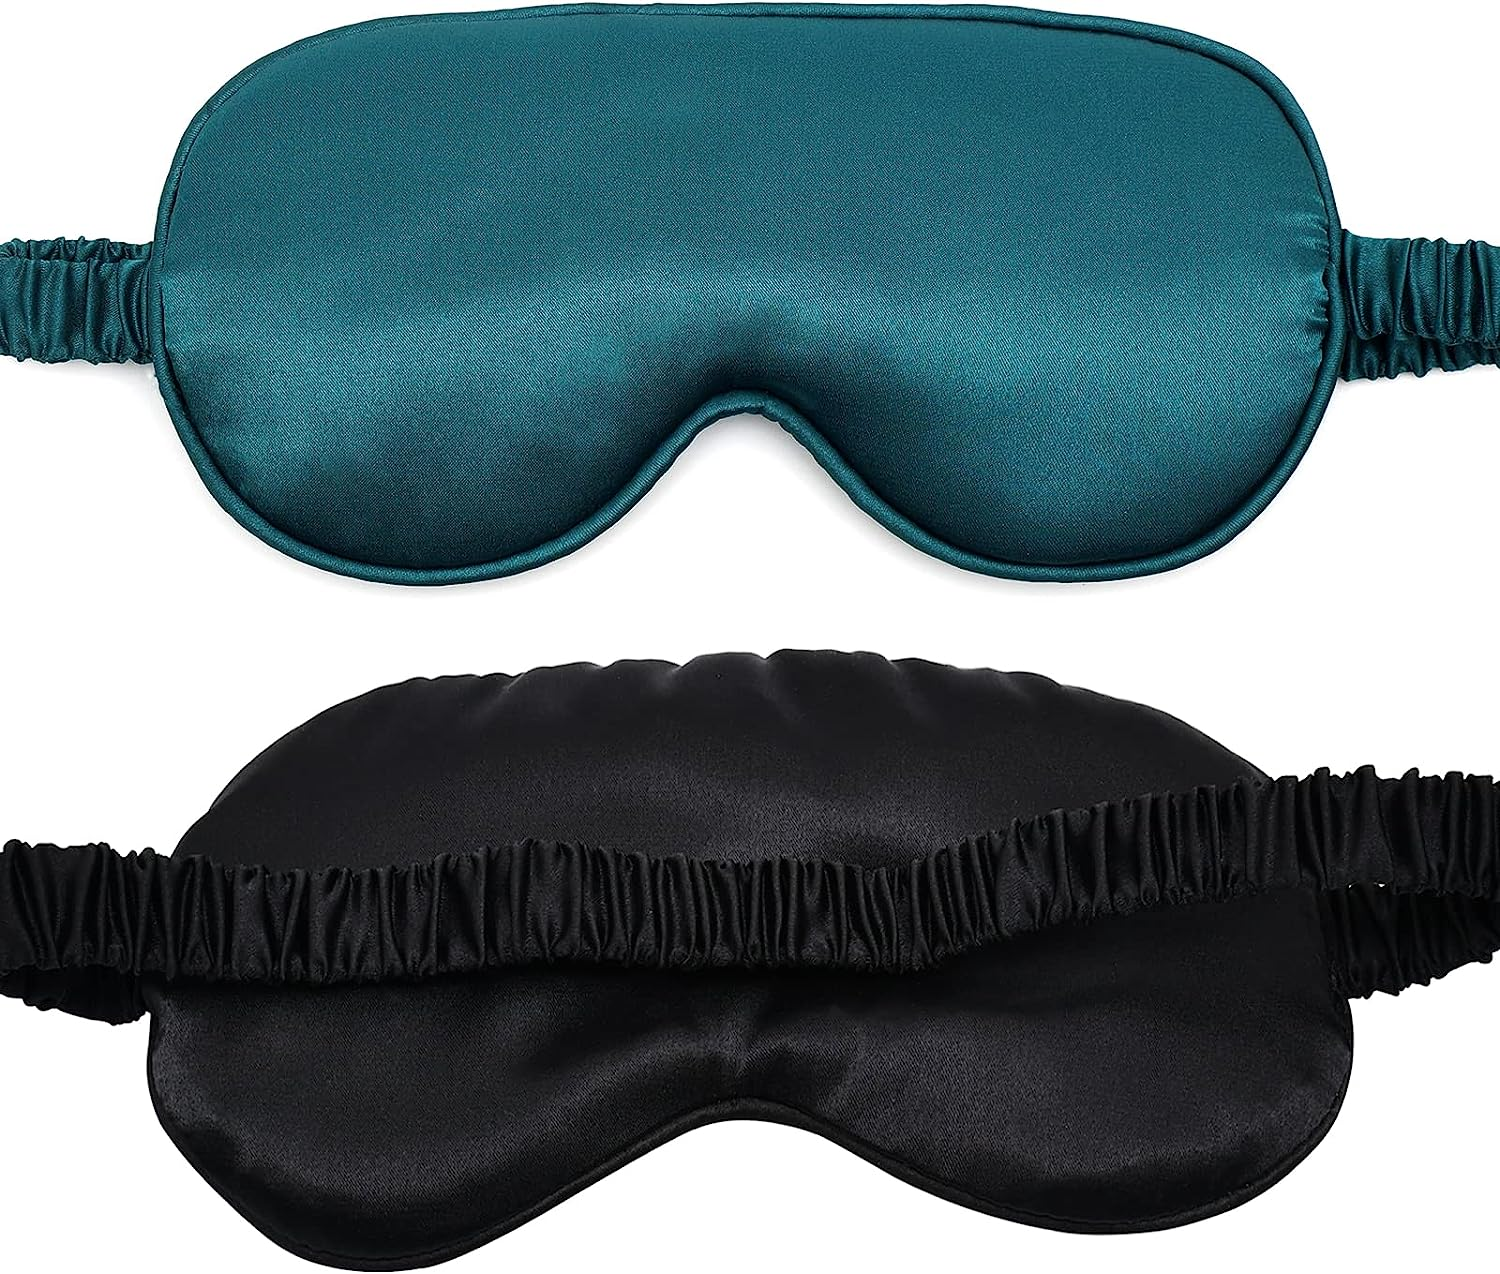 Sleep Masks Silky Soft Satin Eye Mask Cover for Women Men